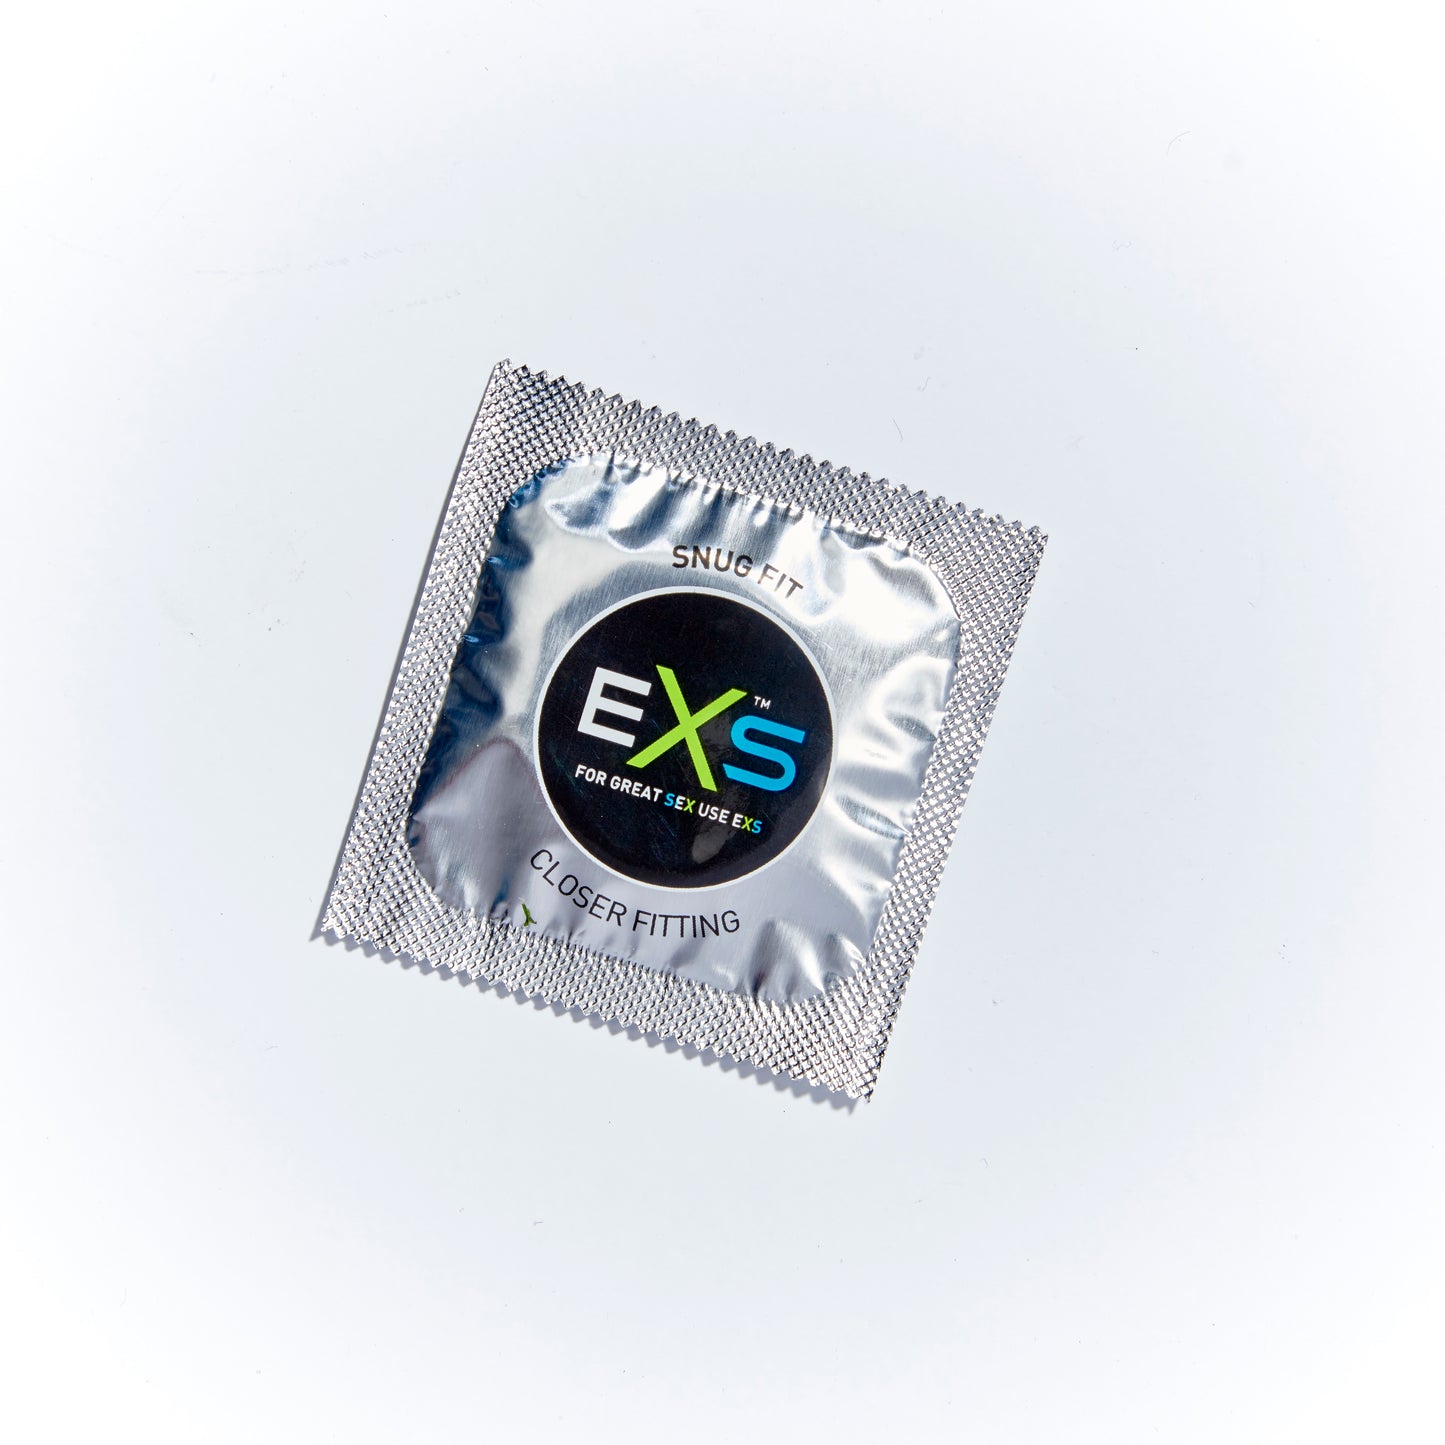 exs condoms snug fit single image 